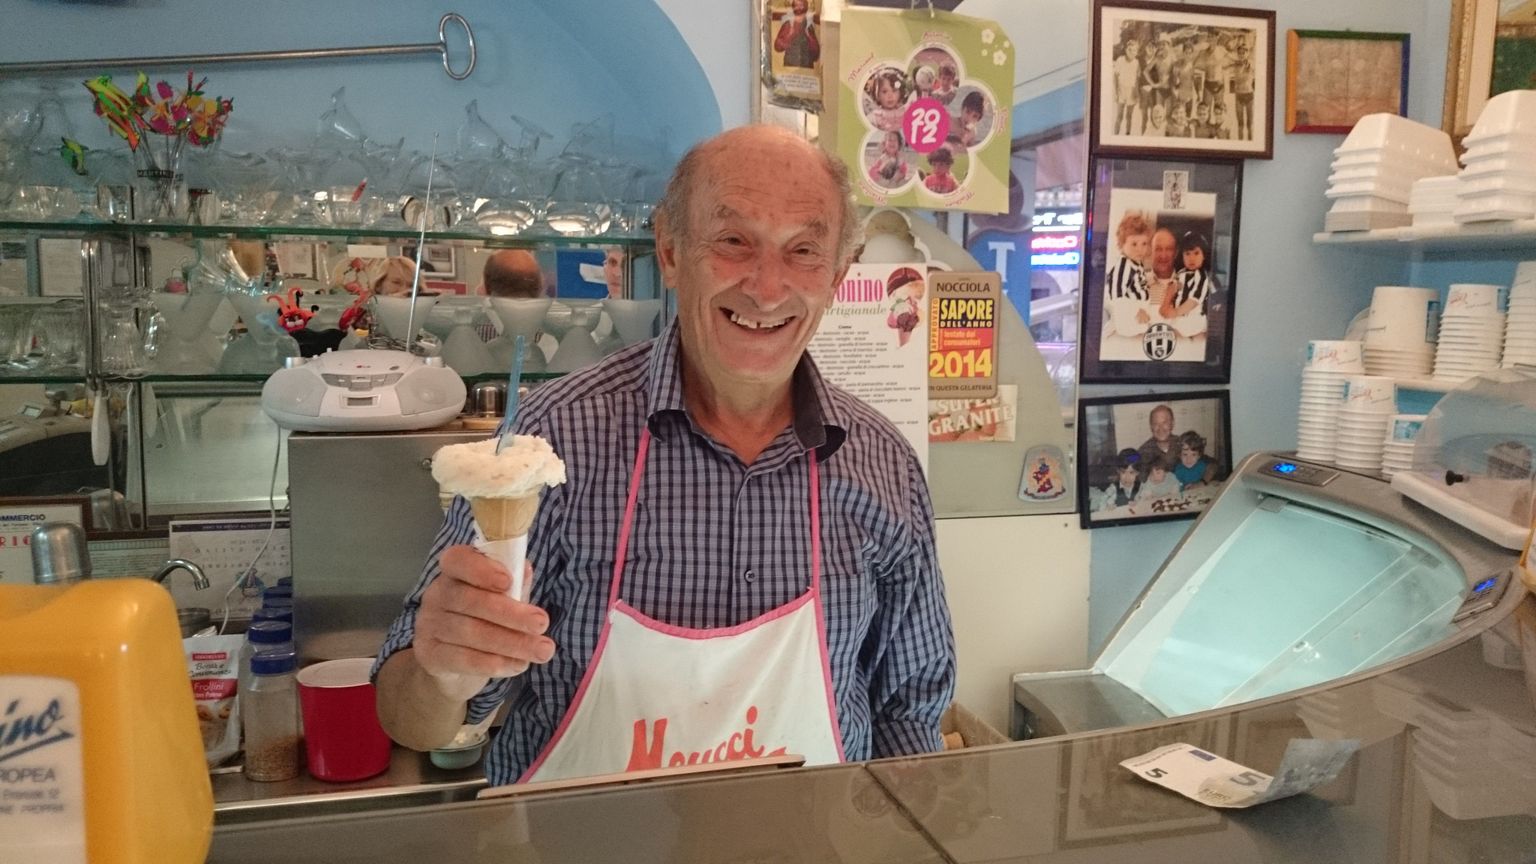 Napist võõrkeelteoskusest hoolimata meeldib jäätisemeister Antonio La Torele kundedega suhelda.